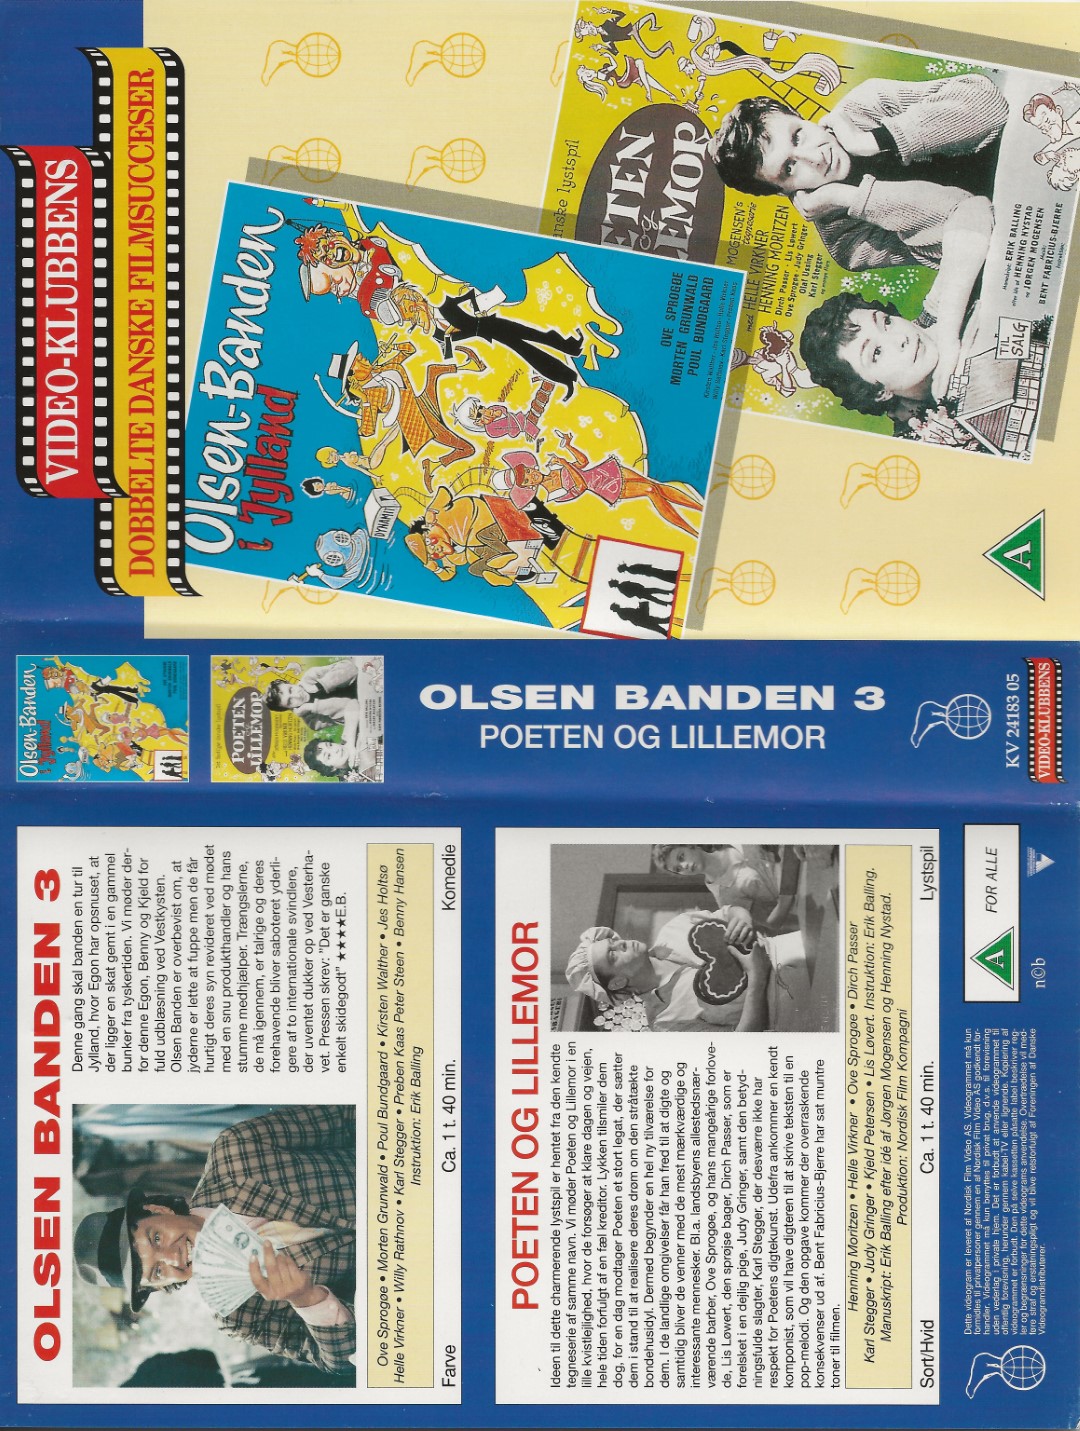 Olsen Banden 3 - Olsen Banden i Jylland  VHS Nordisk Film 0